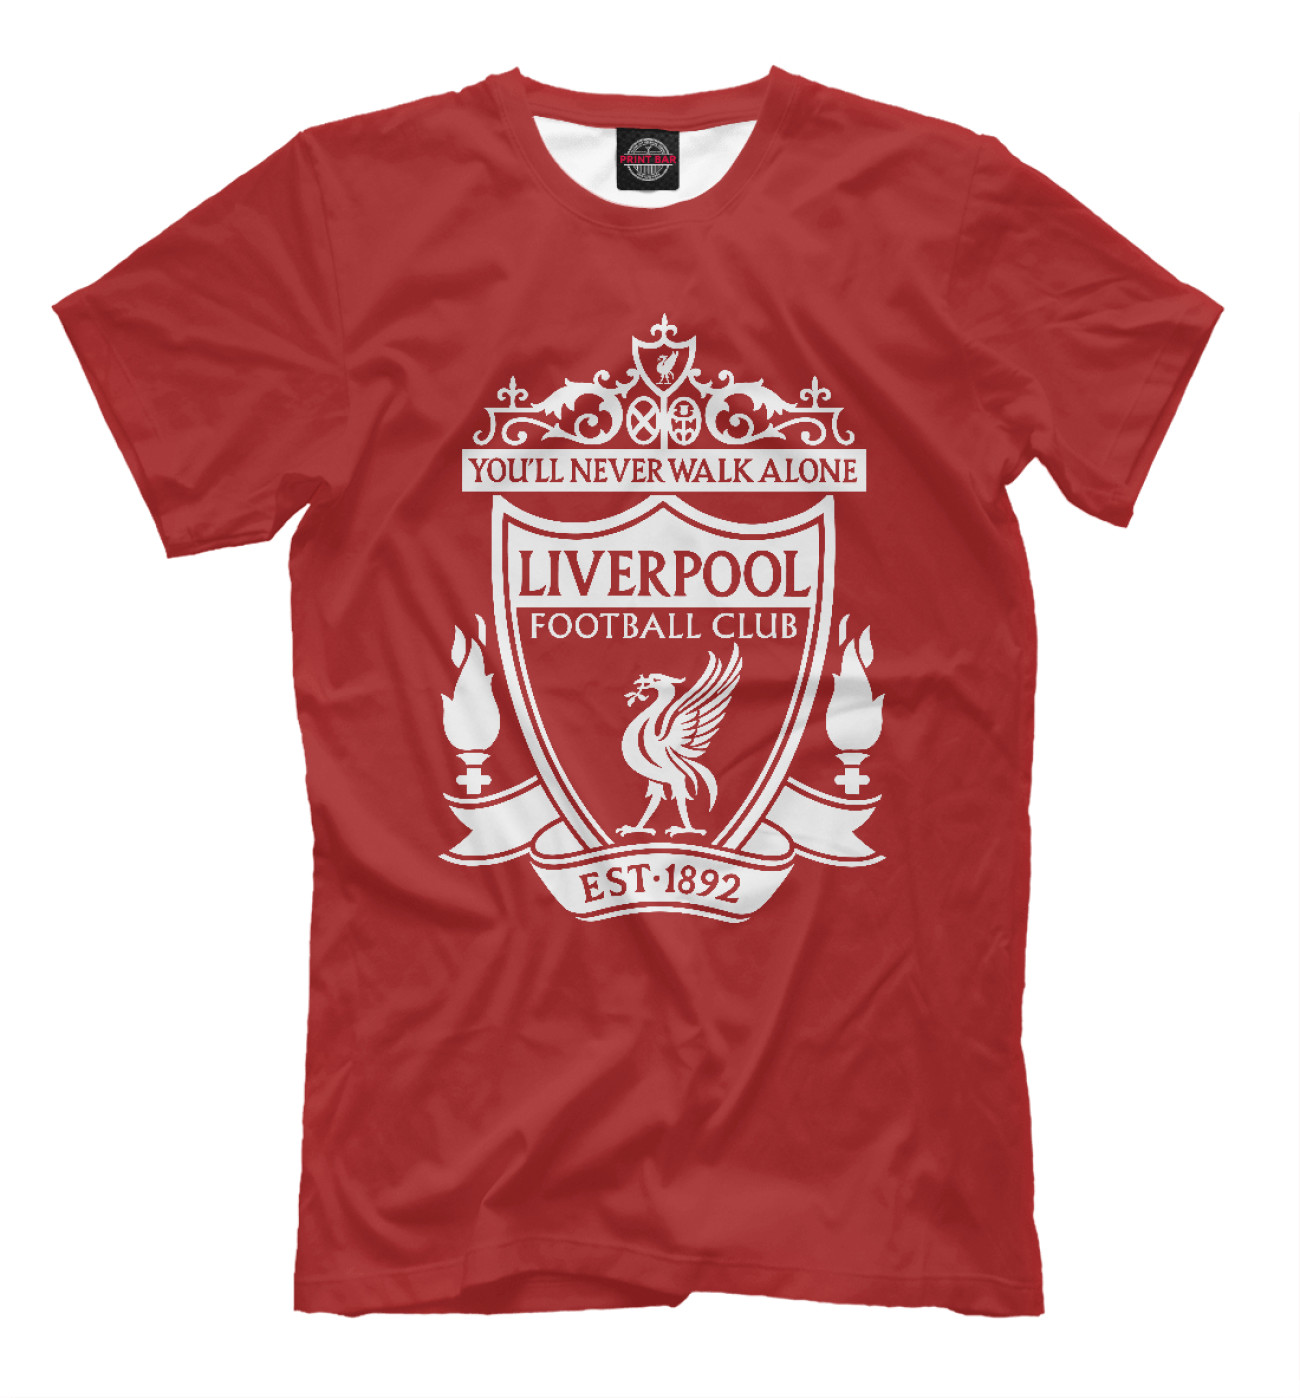 Мужская Футболка Liverpool FC Logo, артикул: LVP-249930-fut-2